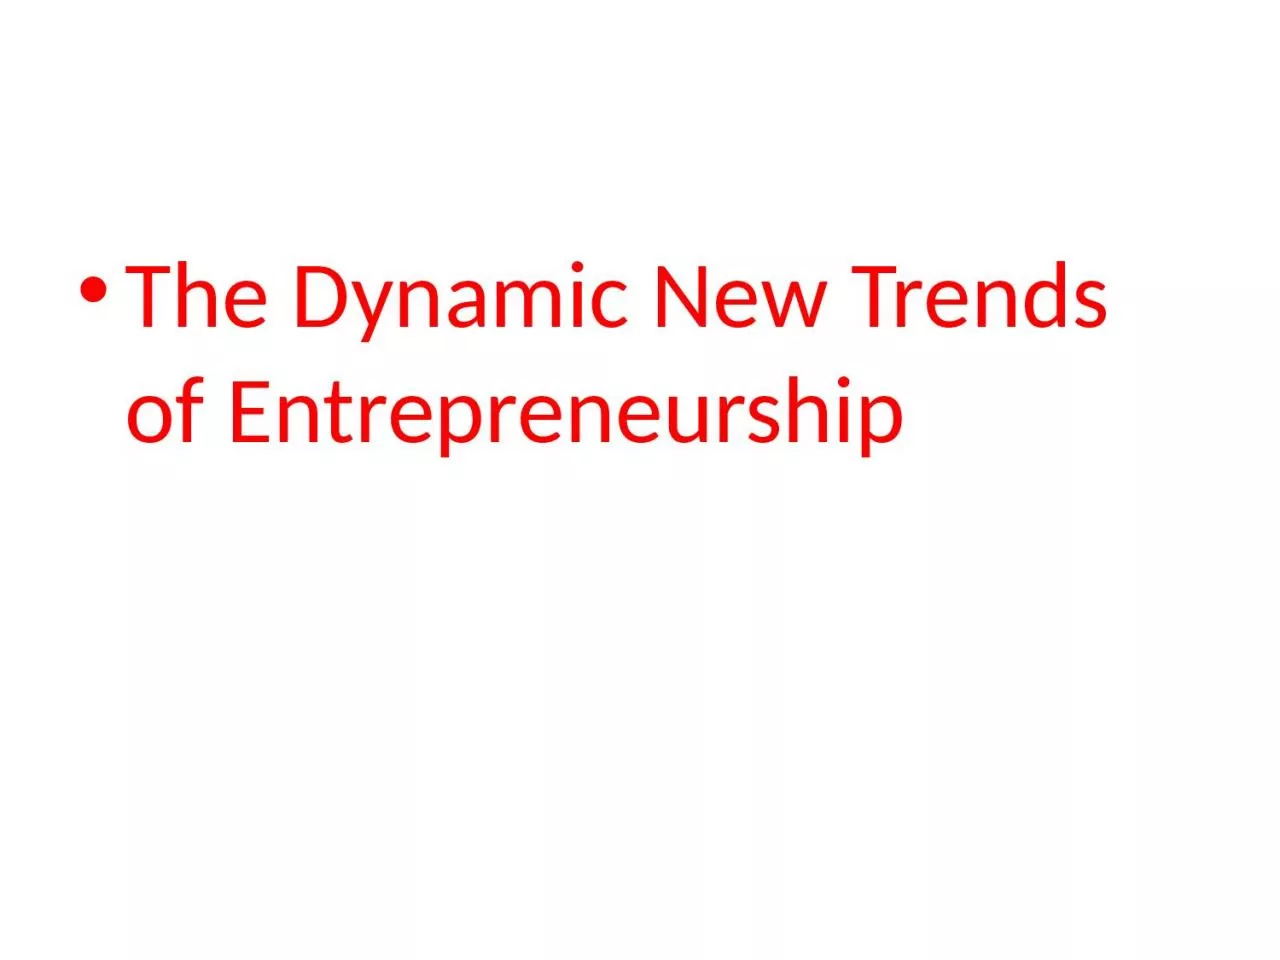 The Dynamic New Trends of Entrepreneurship